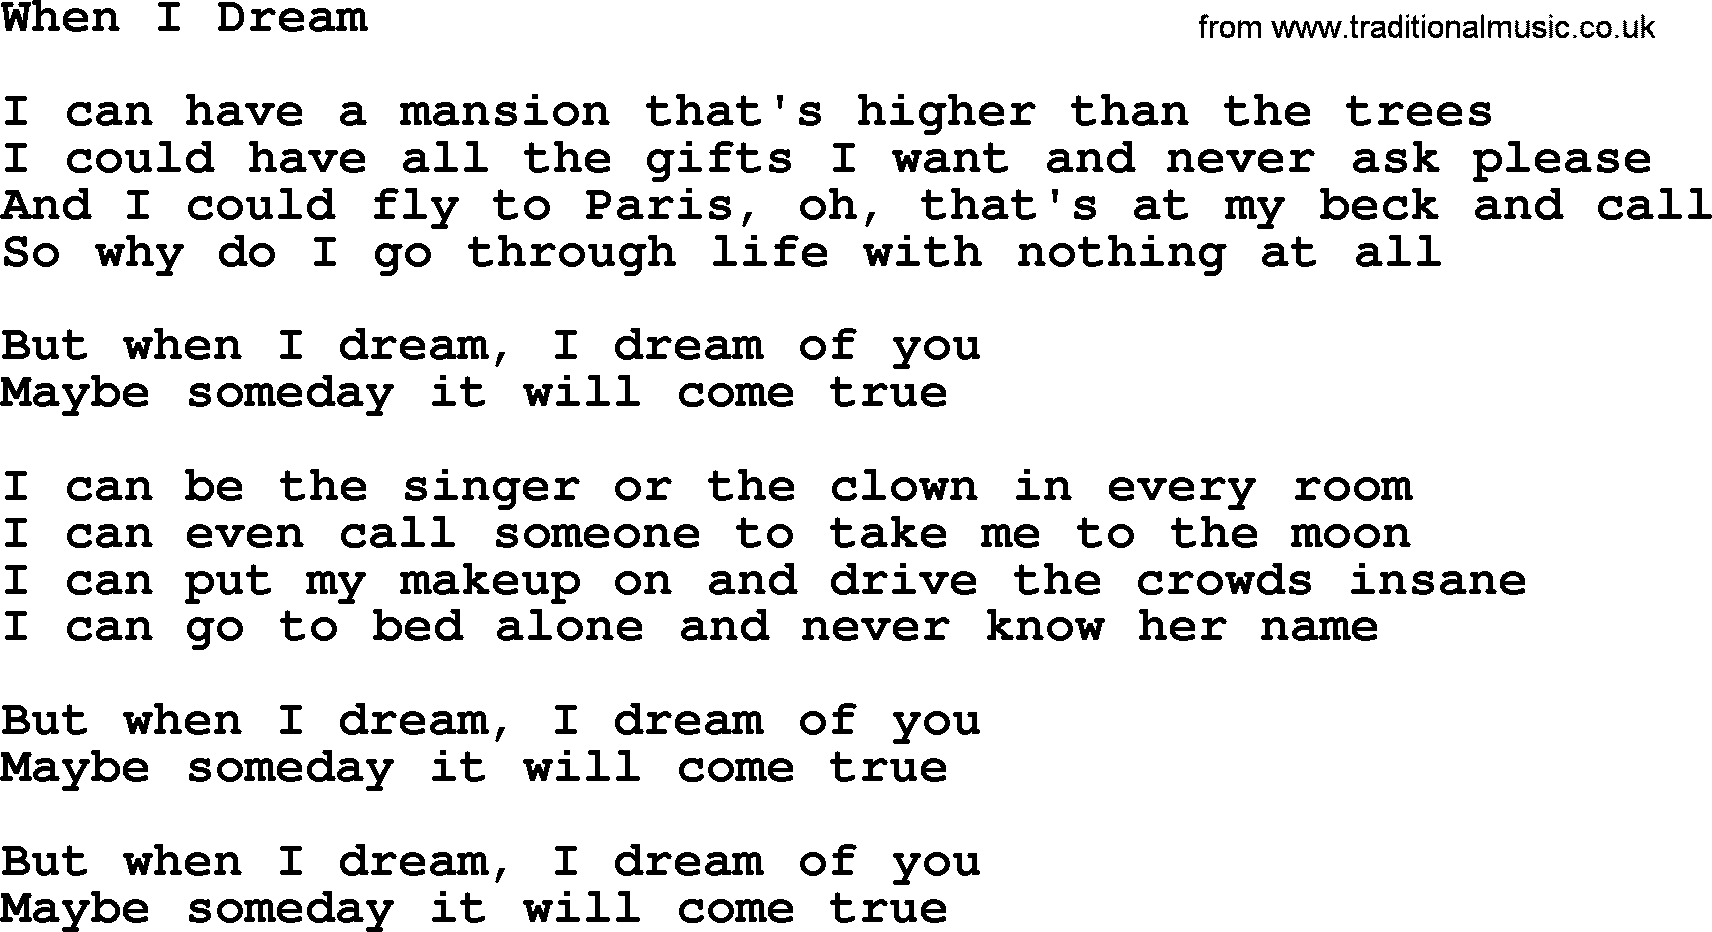 Willie Nelson song: When I Dream lyrics